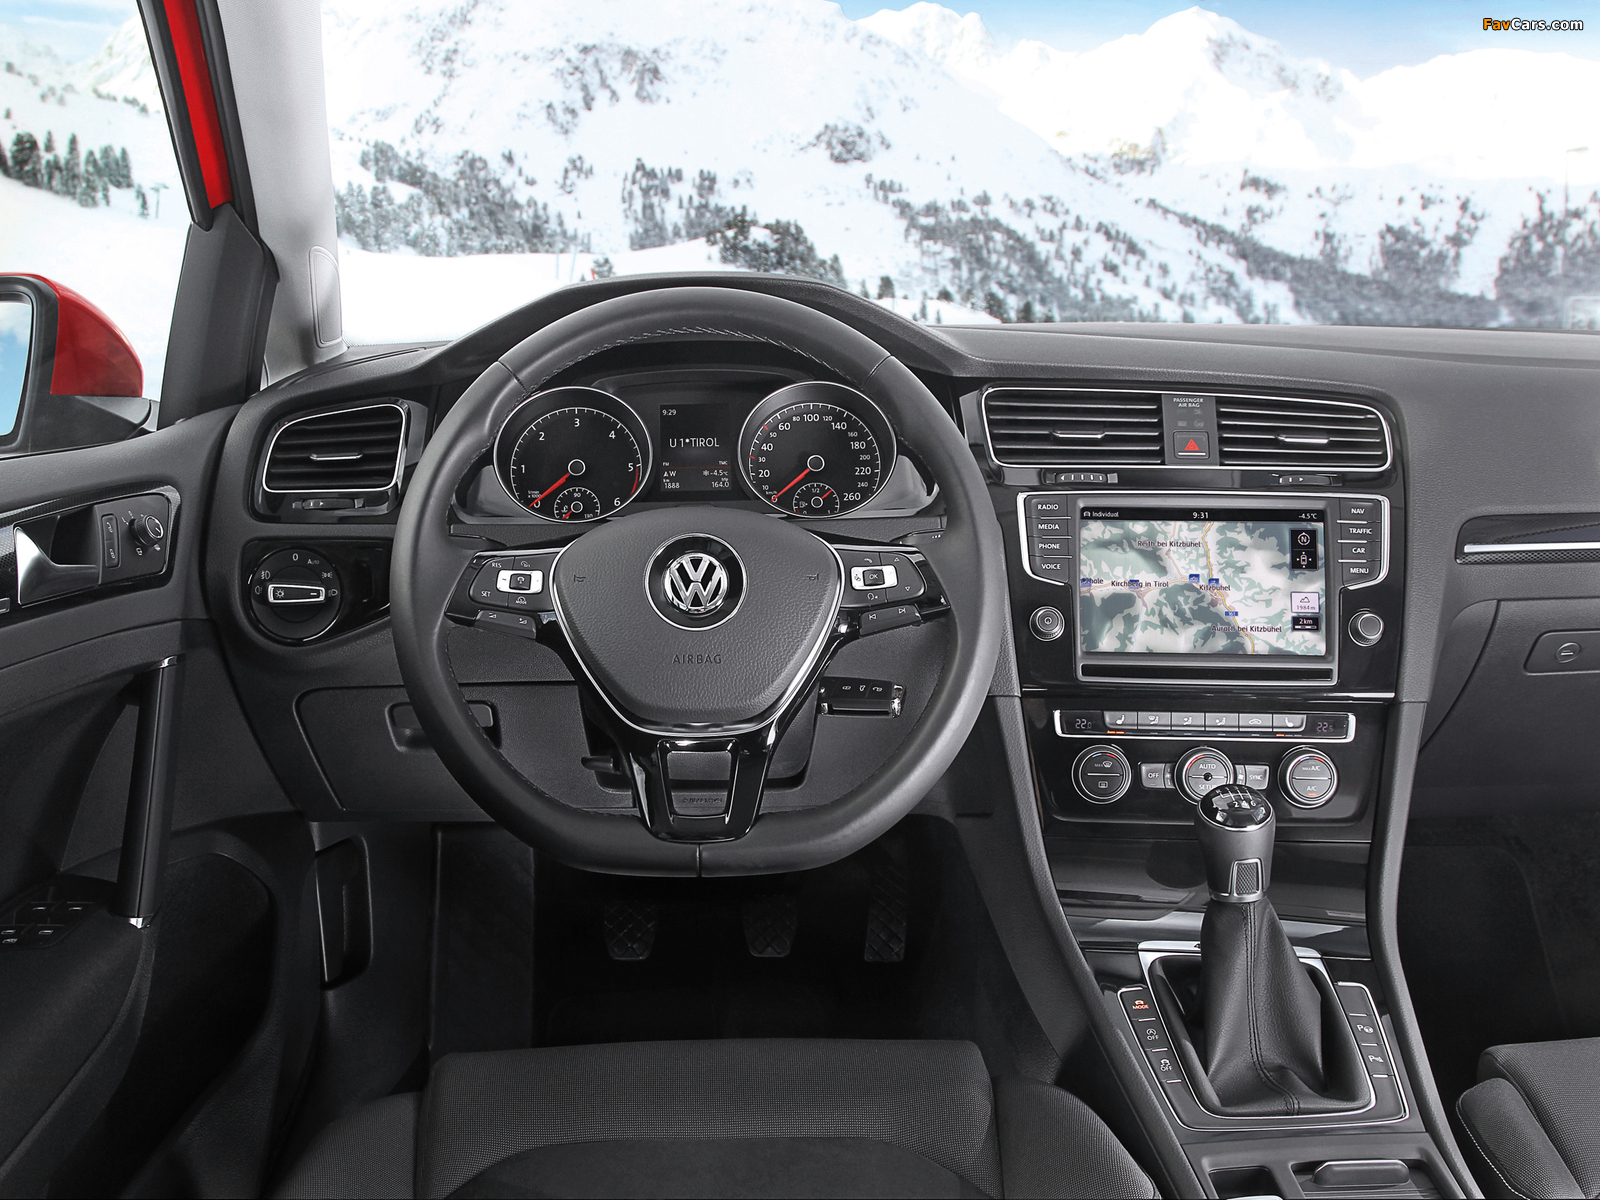 Volkswagen Golf TDI 4MOTION 5-door (Typ 5G) 2013 images (1600 x 1200)